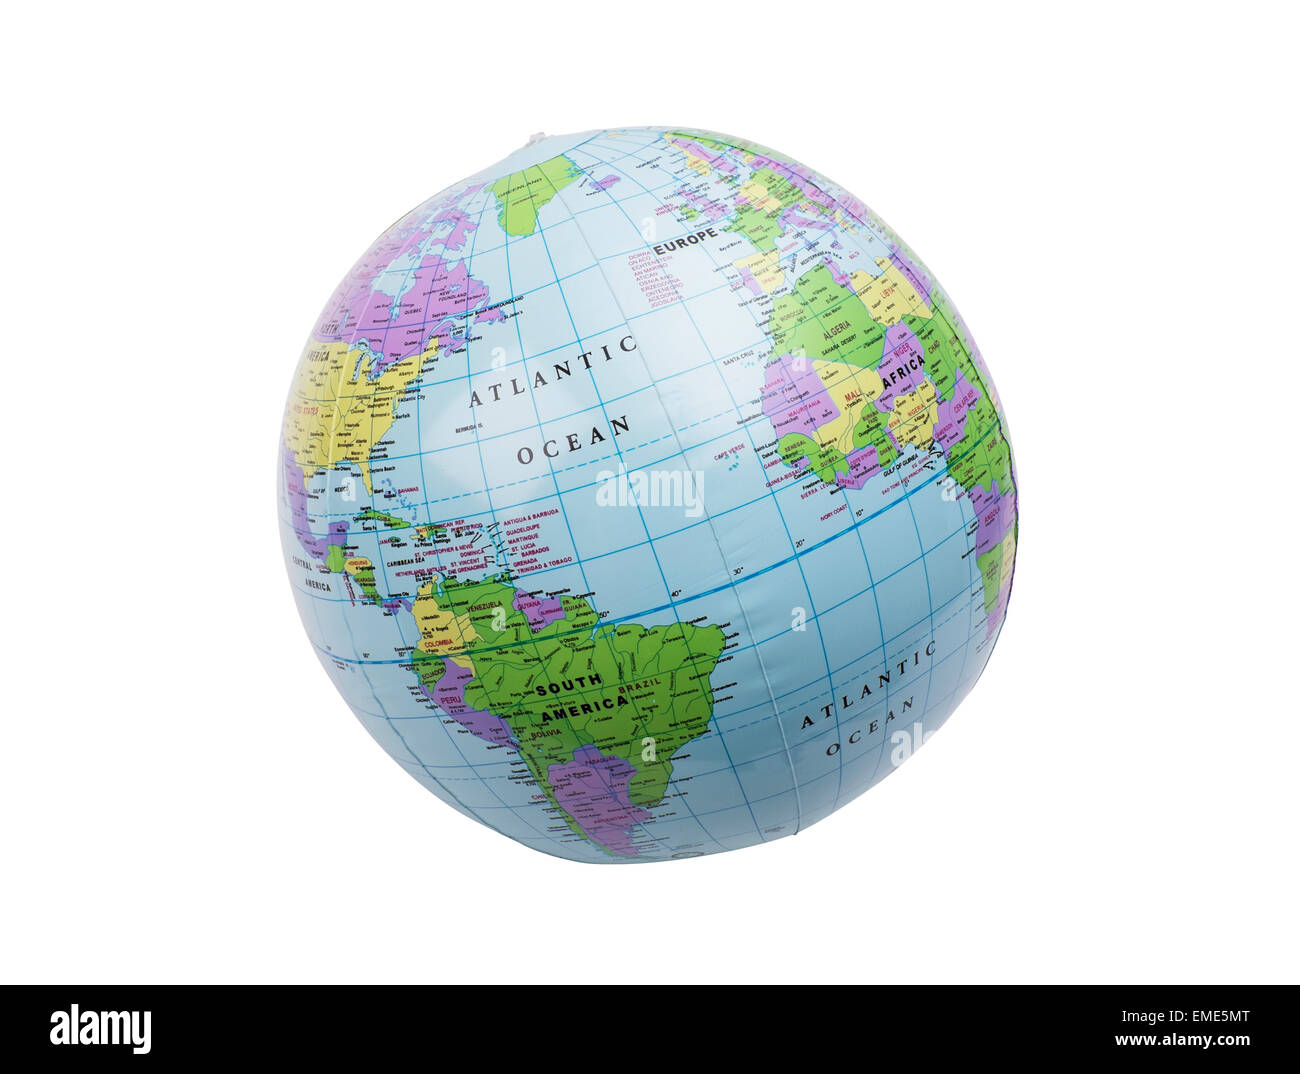 La terre en plastique gonflés toy montrant Amérique du Nord Banque D'Images